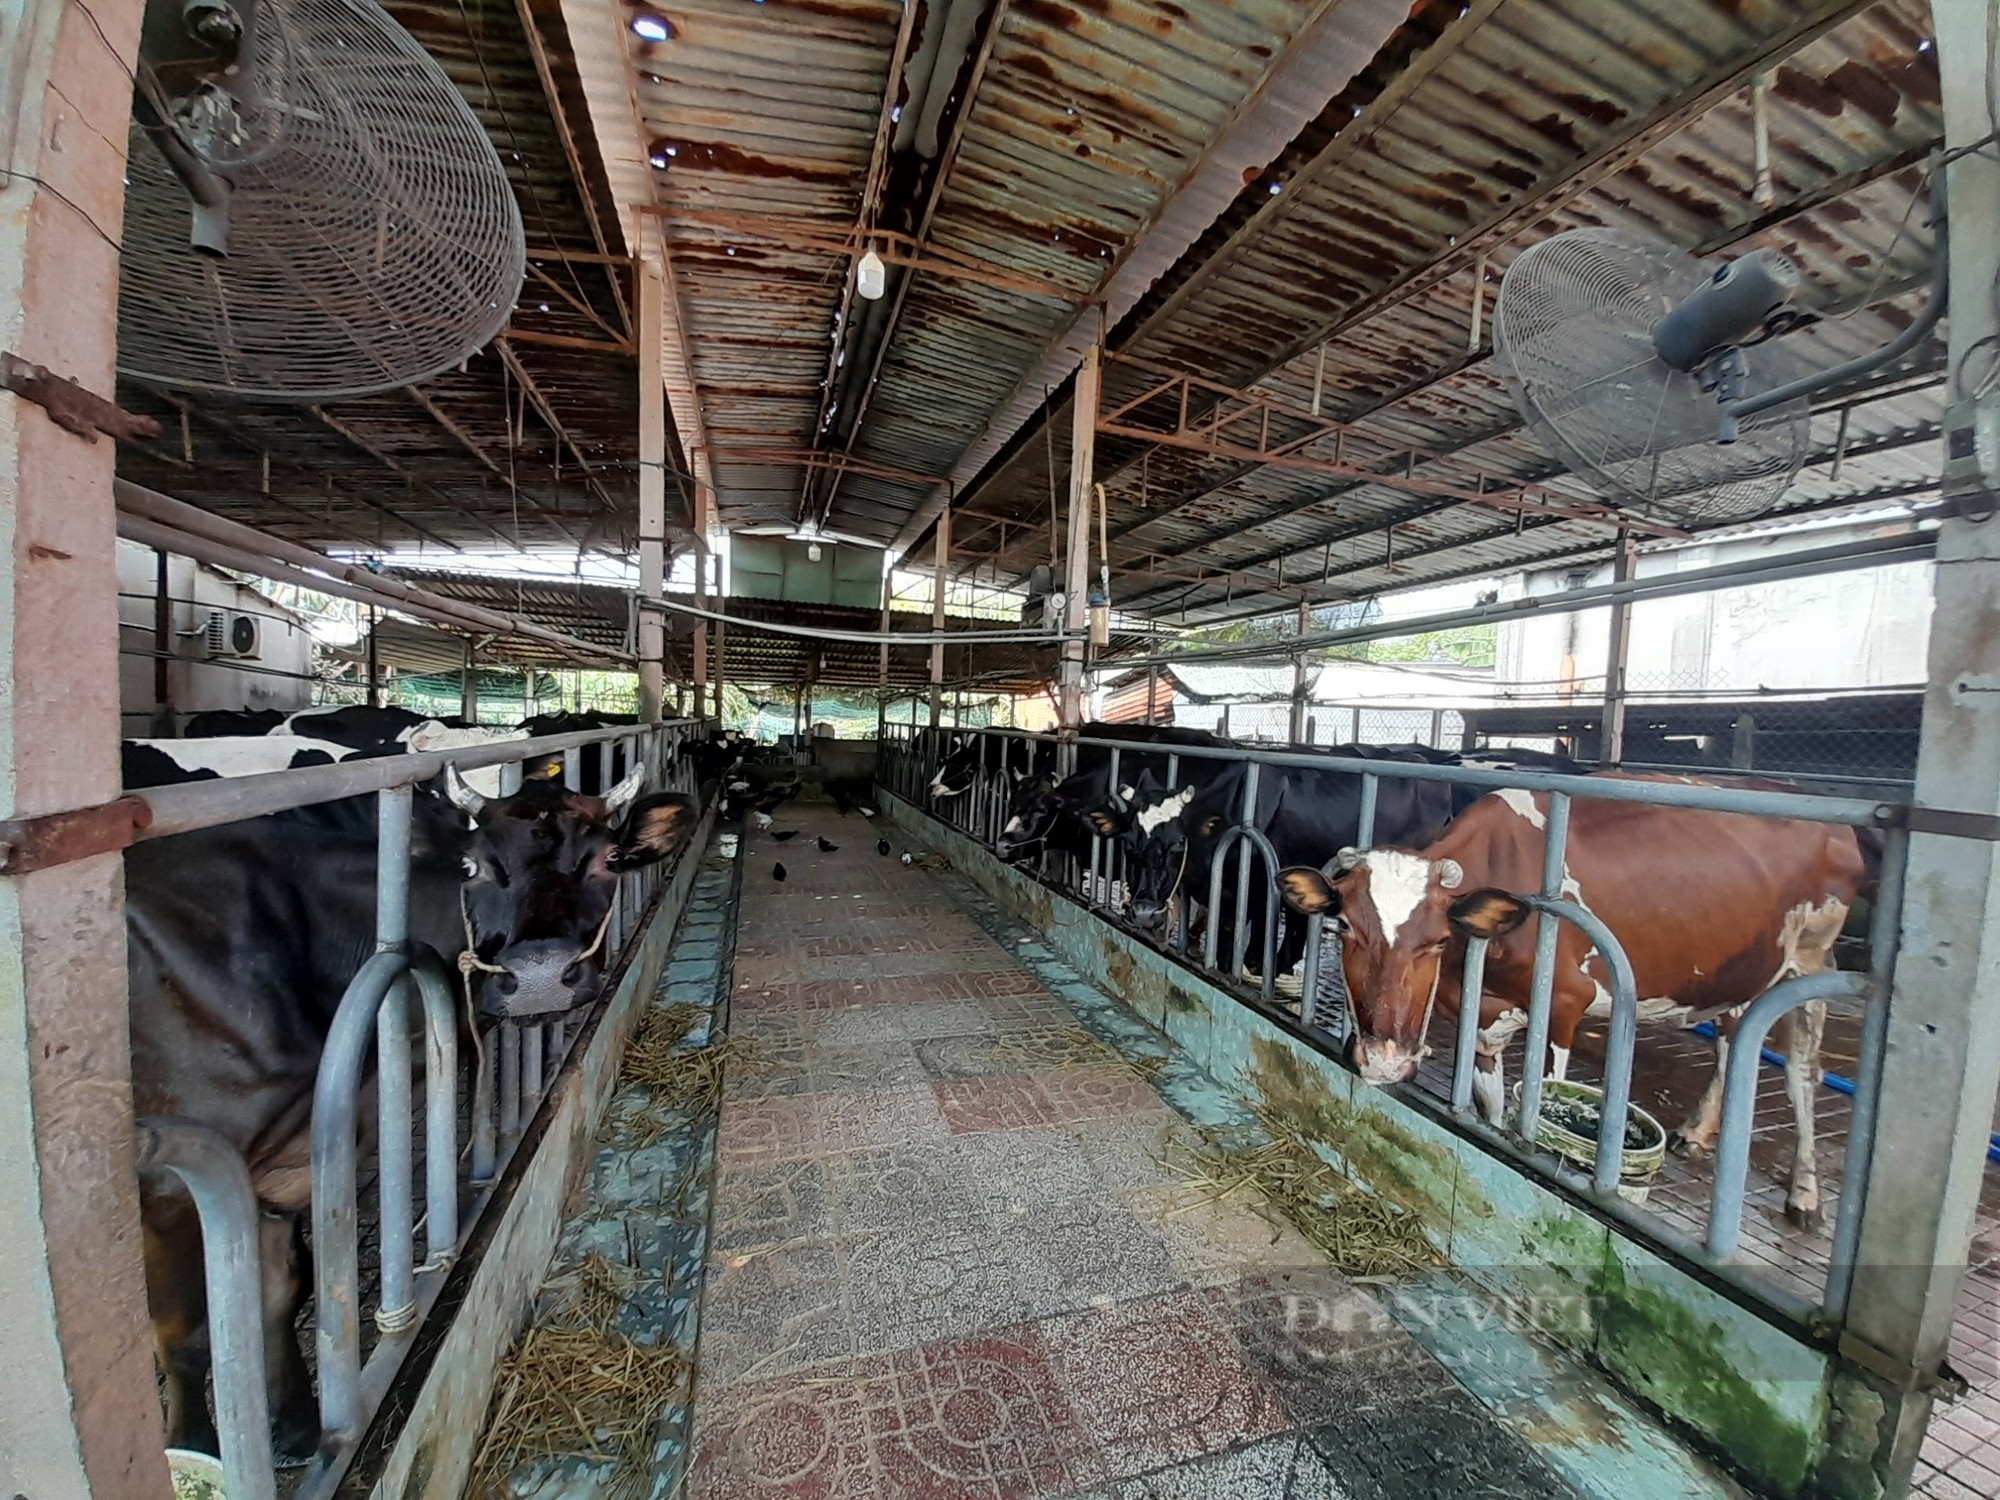 Chăn nuôi bò sữa nông hộ tại TP.HCM - bài 2: Ngành chăn nuôi bò sữa lục tục dạt ra vùng ven - Ảnh 3.